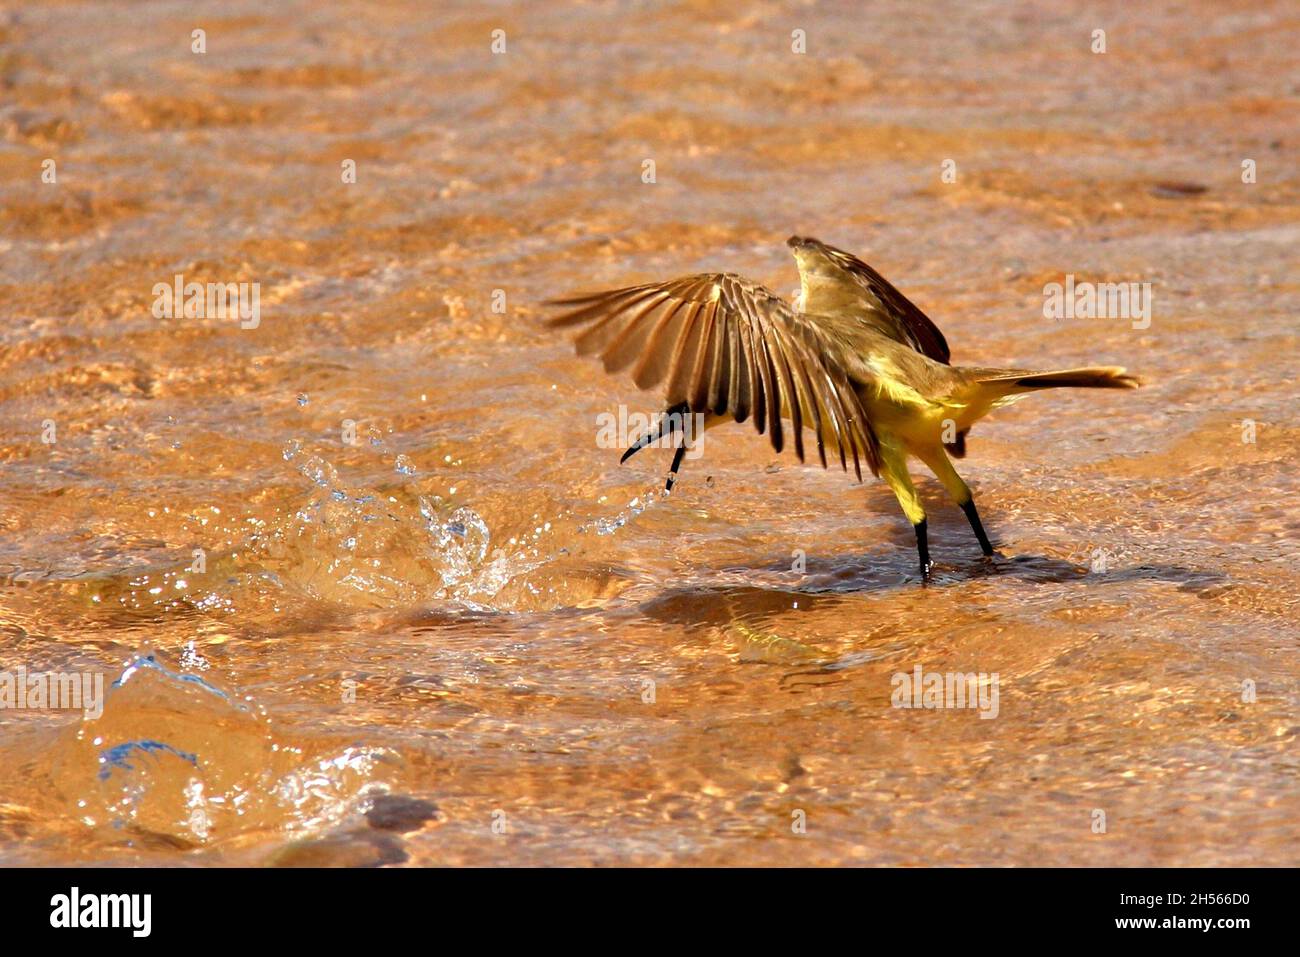 Bel oiseau doré au bord d'un lac, photo prise quand l'oiseau prend un poisson à Bonito, Mato Grosso do Sul, Brésil. Banque D'Images